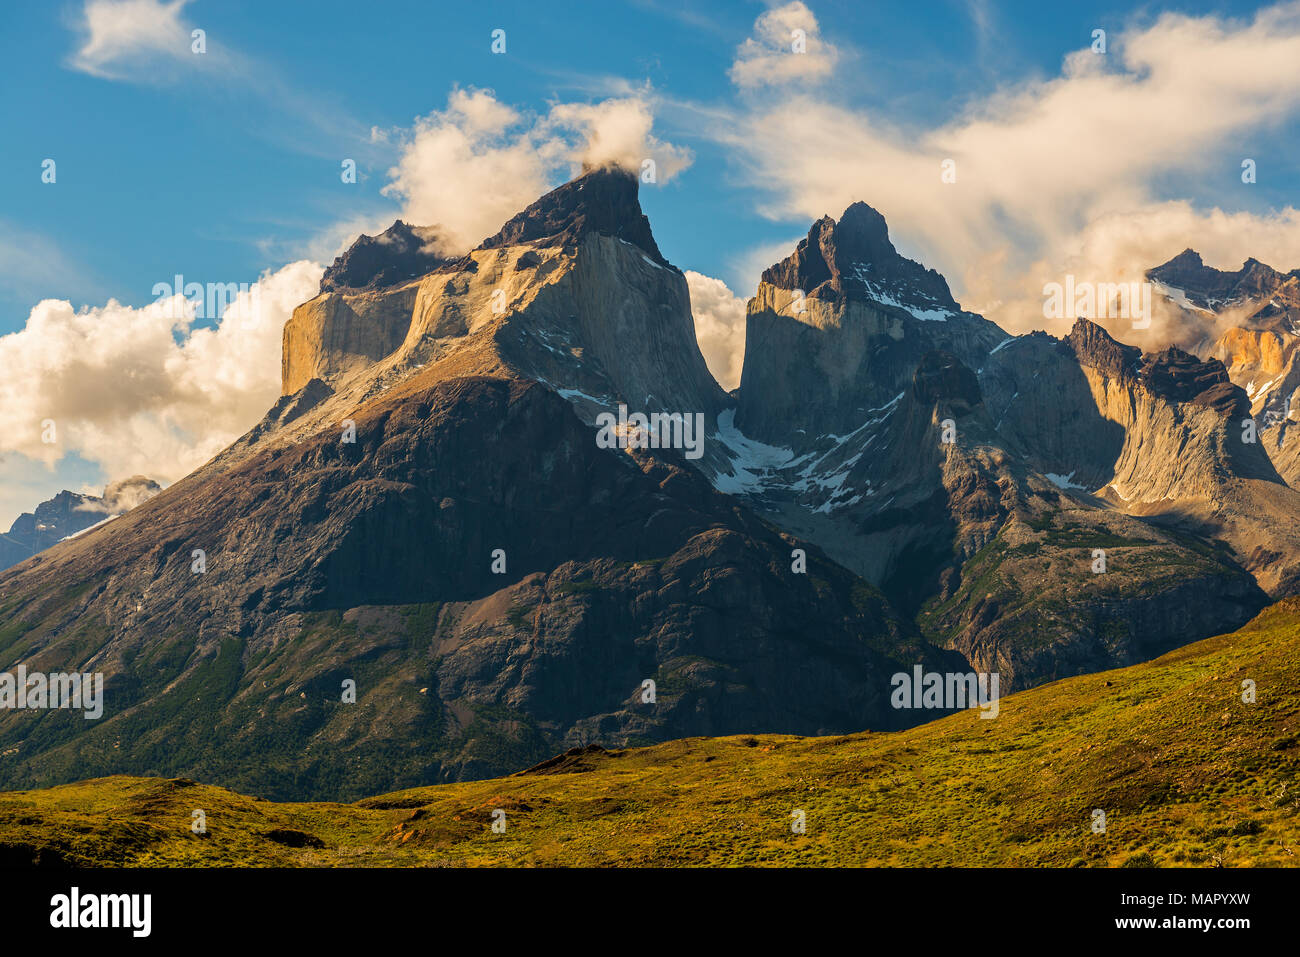 Los majestuosos picos de granito, los Cuernos del Paine al atardecer en el interior del parque nacional Torres del Paine, Cordillera de Los Andes, la Patagonia de Chile. Foto de stock